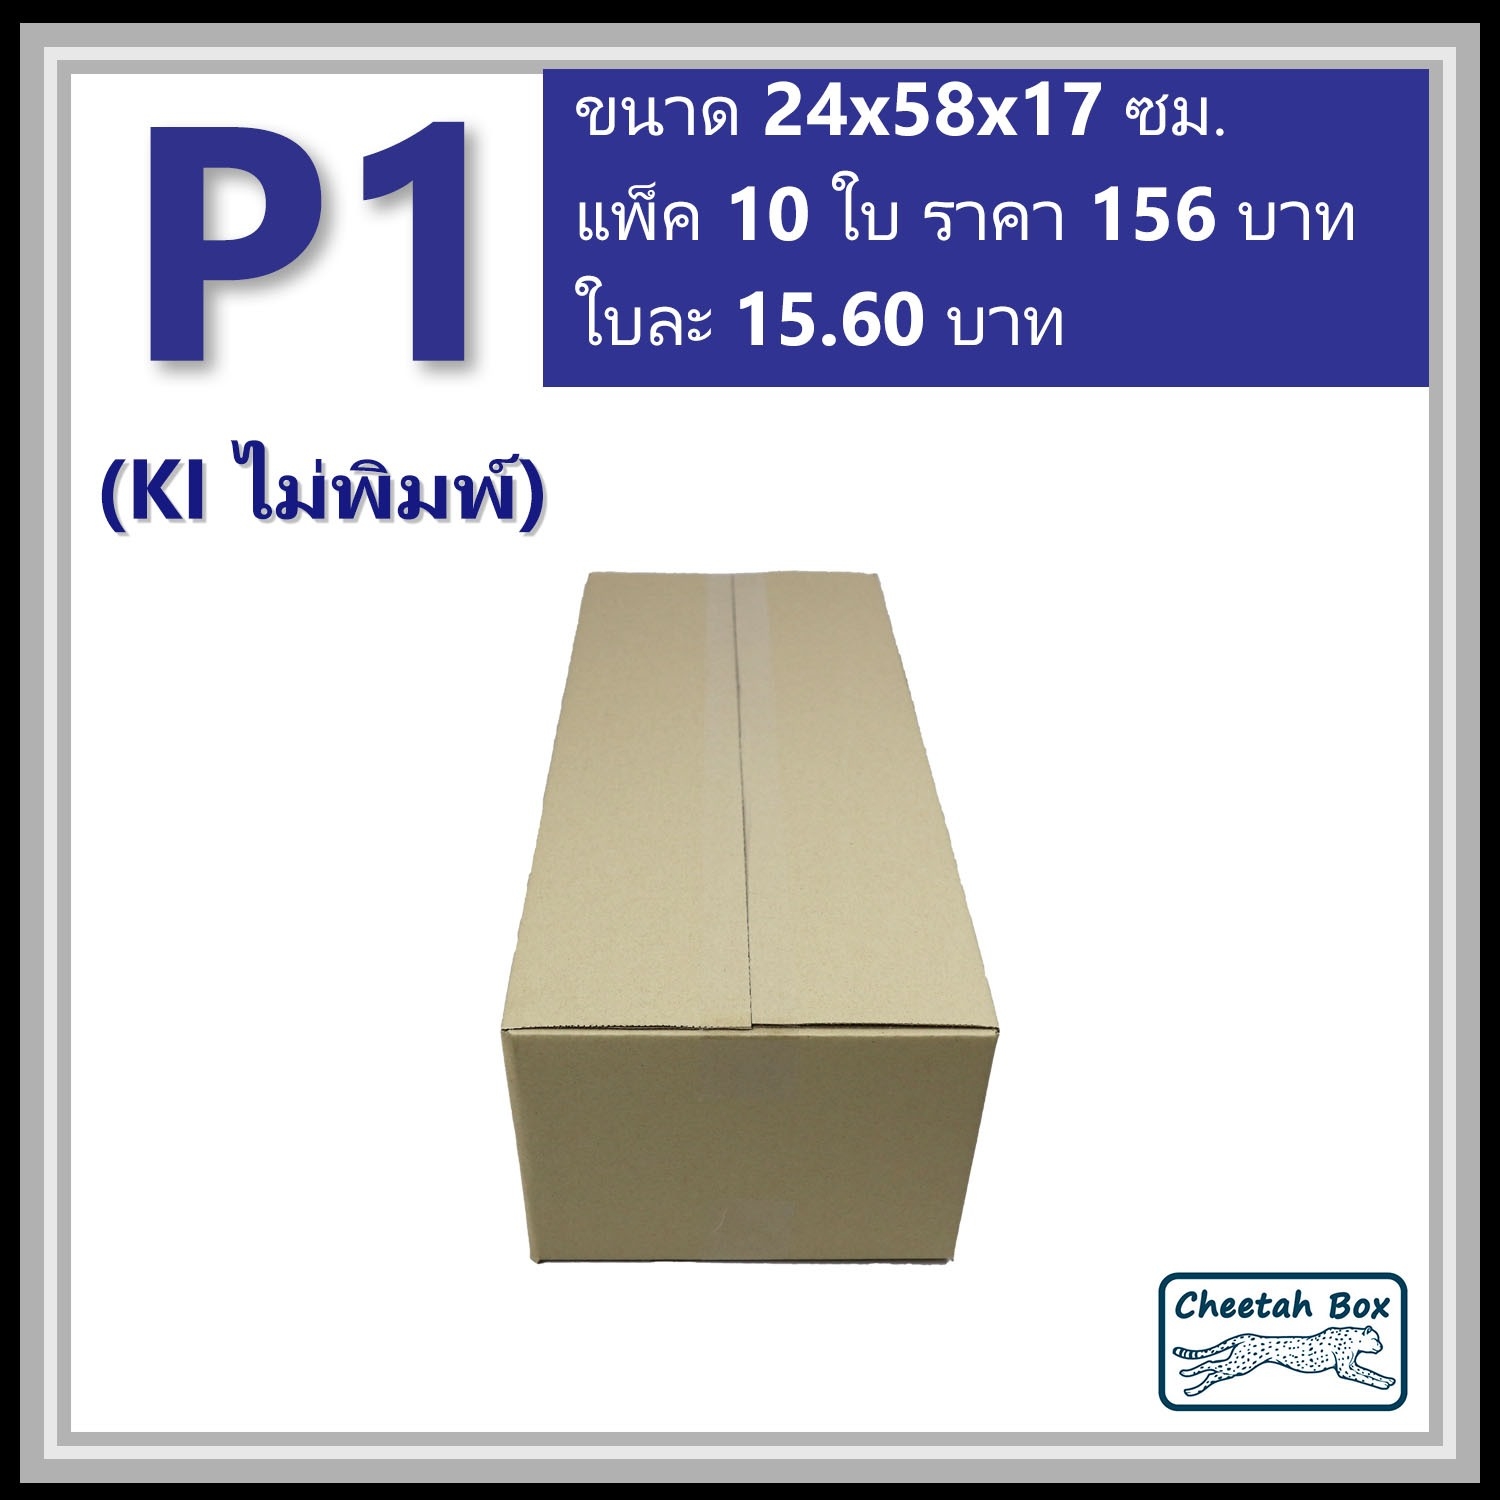 กล่องพัสดุ P1 ไม่พิมพ์ (Post Box) ลูกฟูก 3 ชั้น ขนาด 24W x 58L x 17H cm.